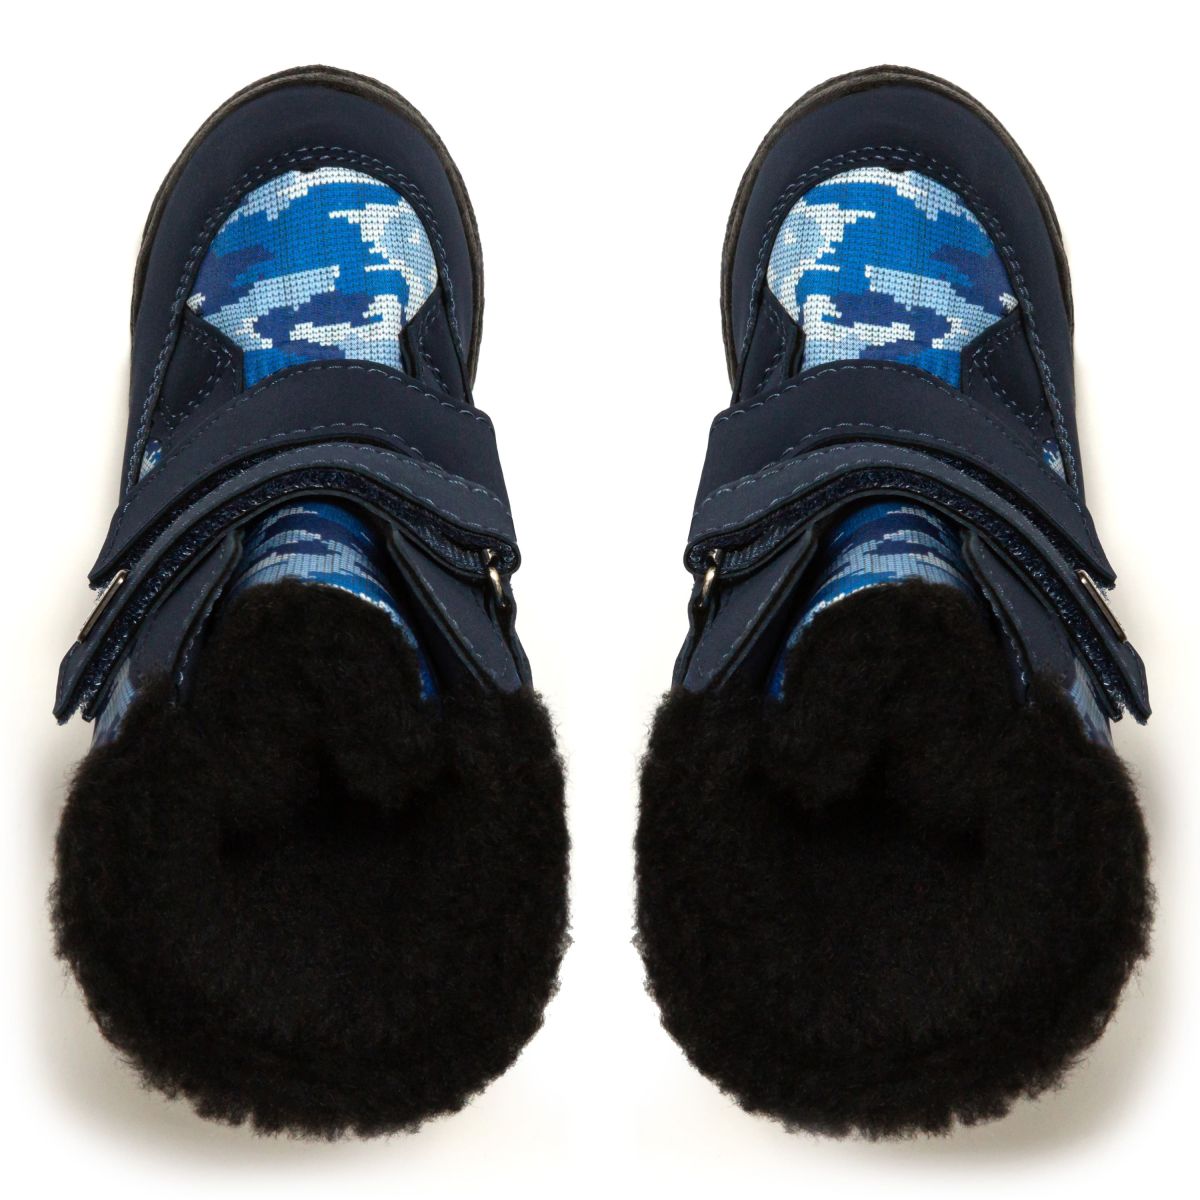 Дитячі чоботи-дутики зимові Alaska Military сині